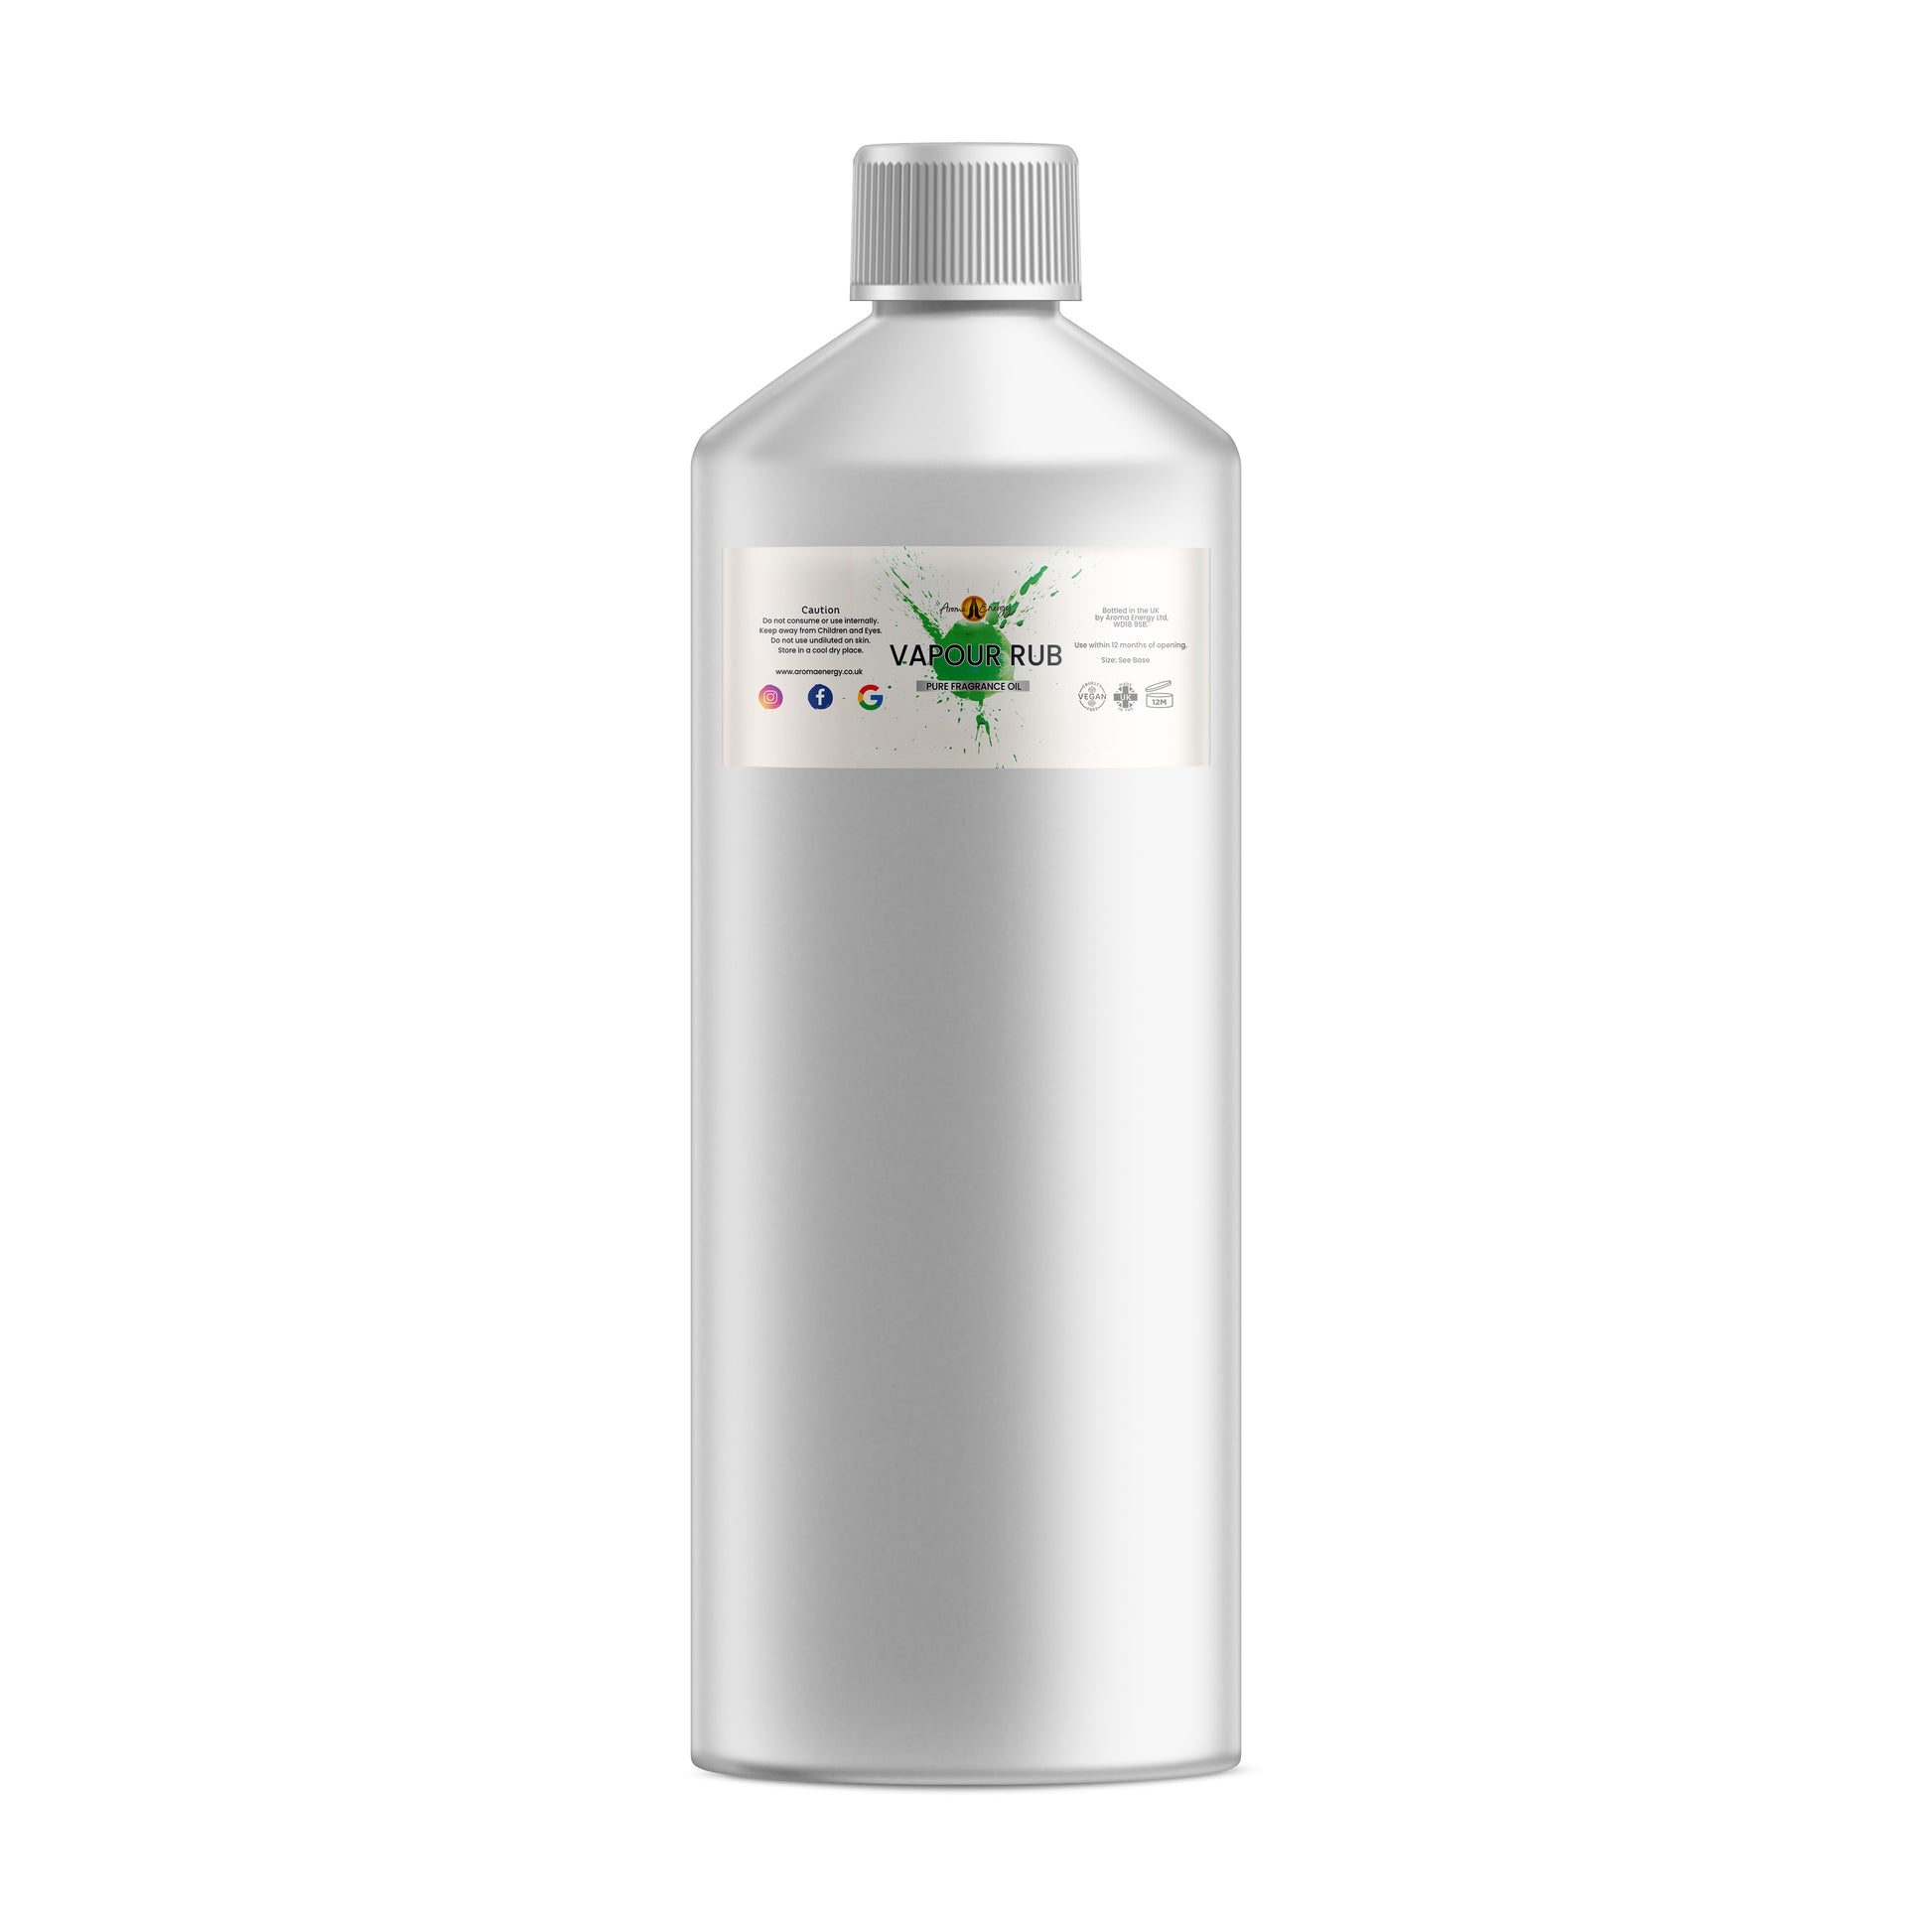 Vapour Rub Designer Fragrance Oil - Wholesale - Aroma Energy